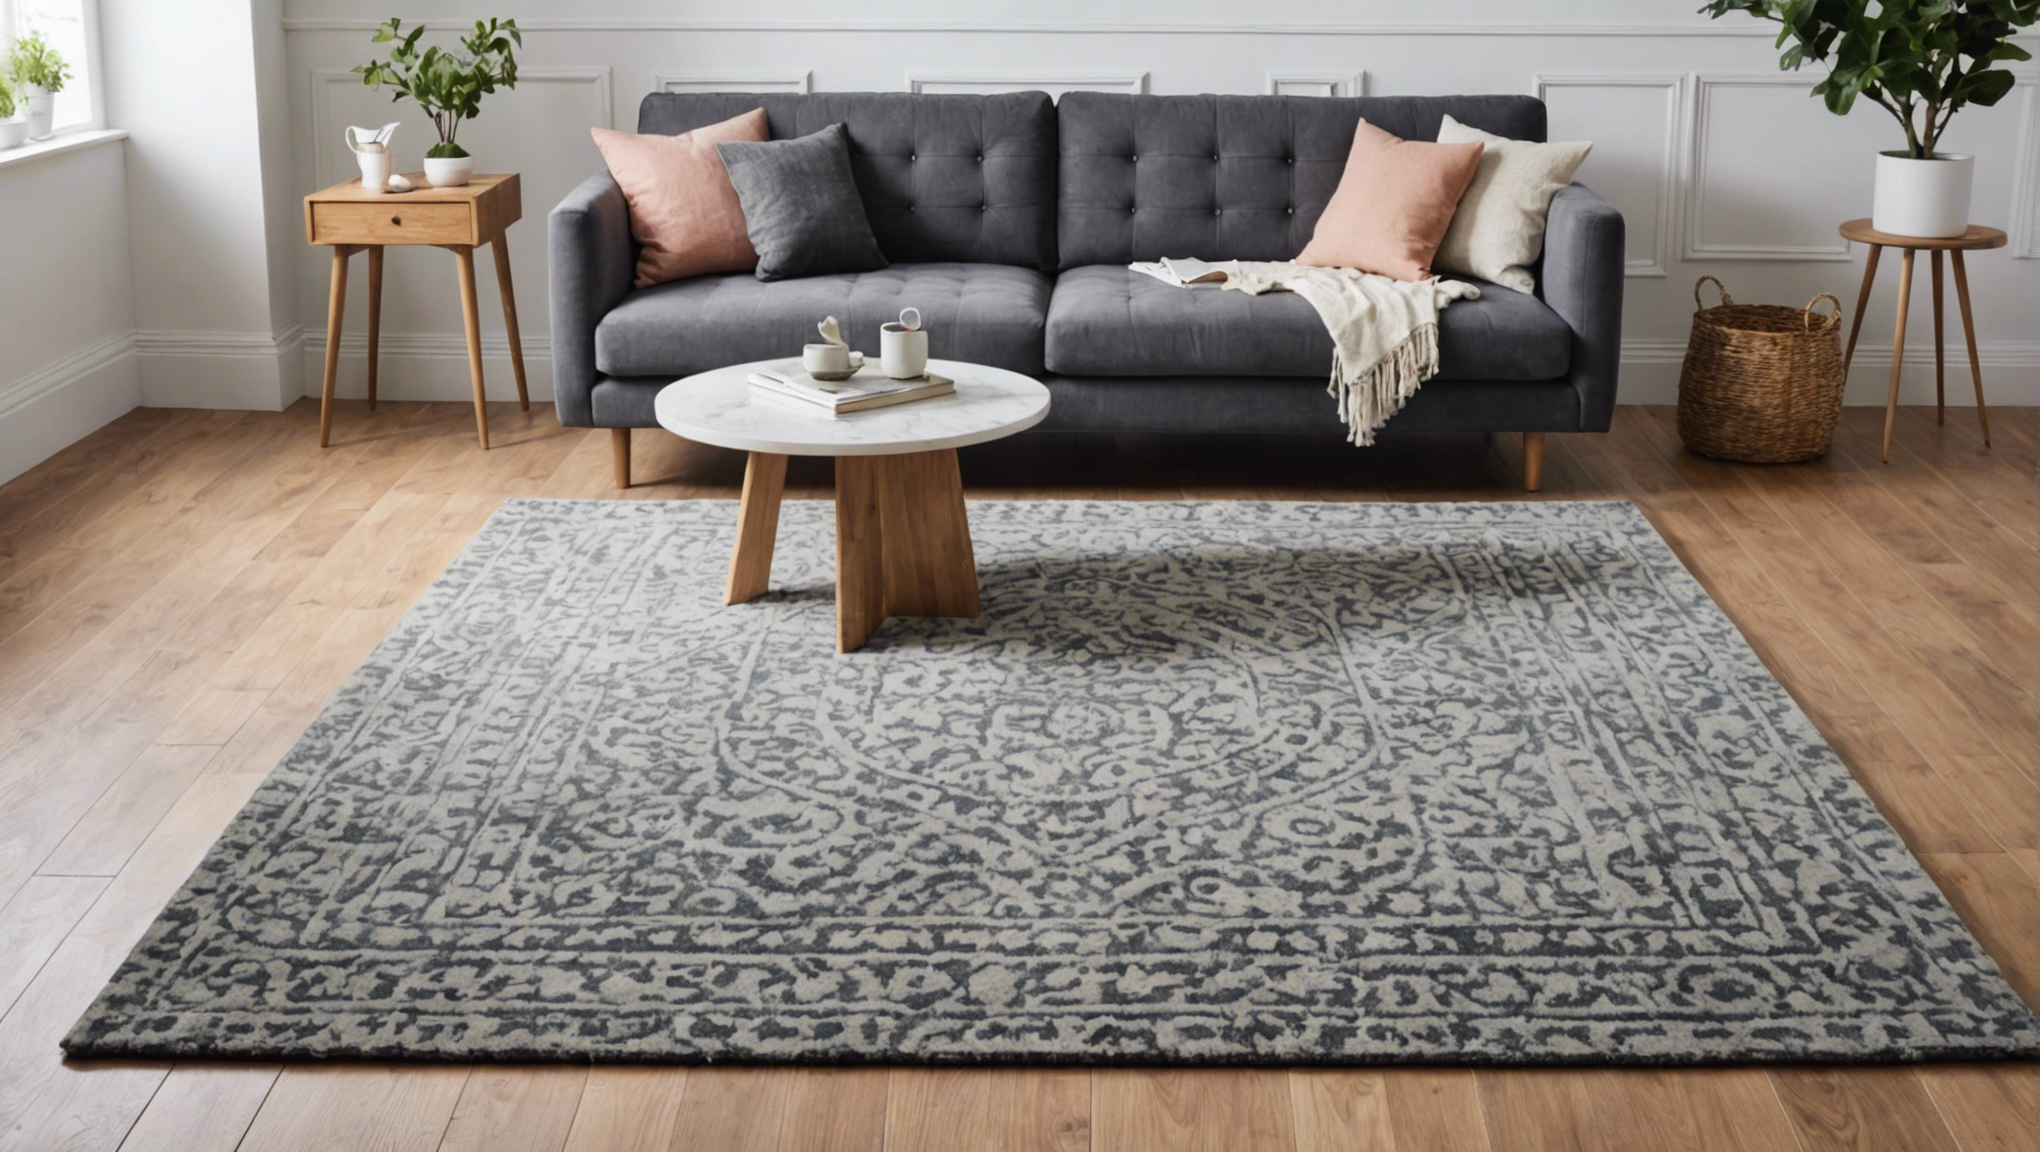 découvrez nos conseils pour choisir le tapis parfait pour votre intérieur avec maison du monde. différentes tailles, couleurs et styles vous attendent !